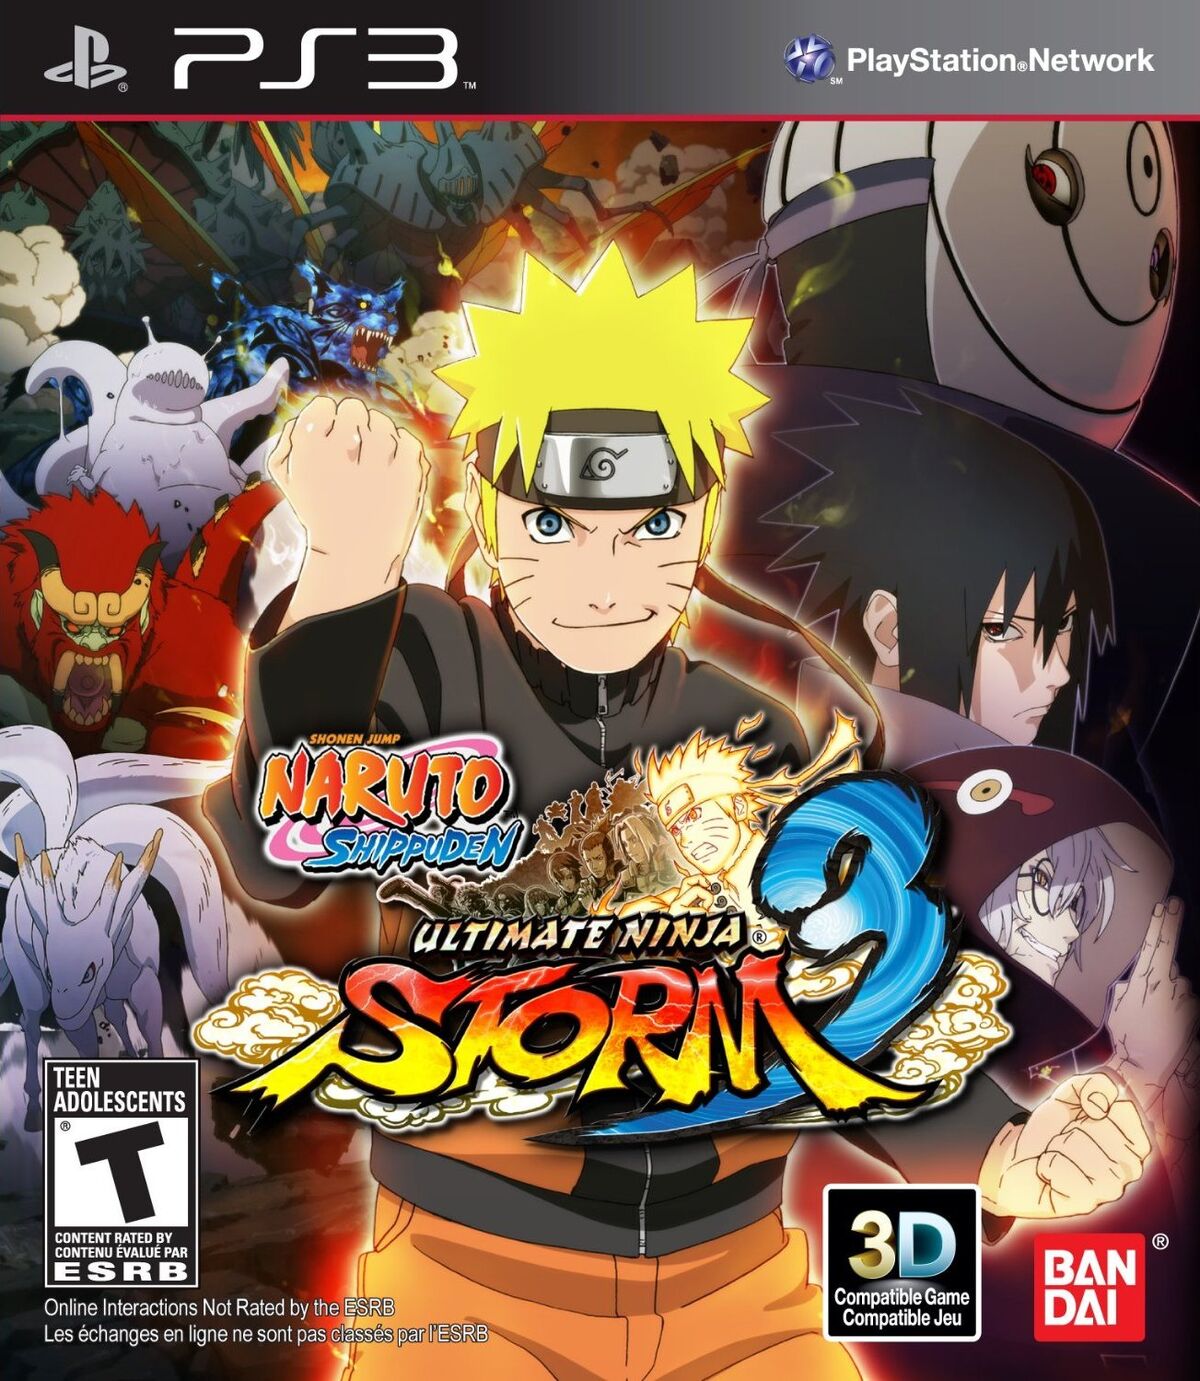 Naruto: Shippuden (season 2) - Wikipedia